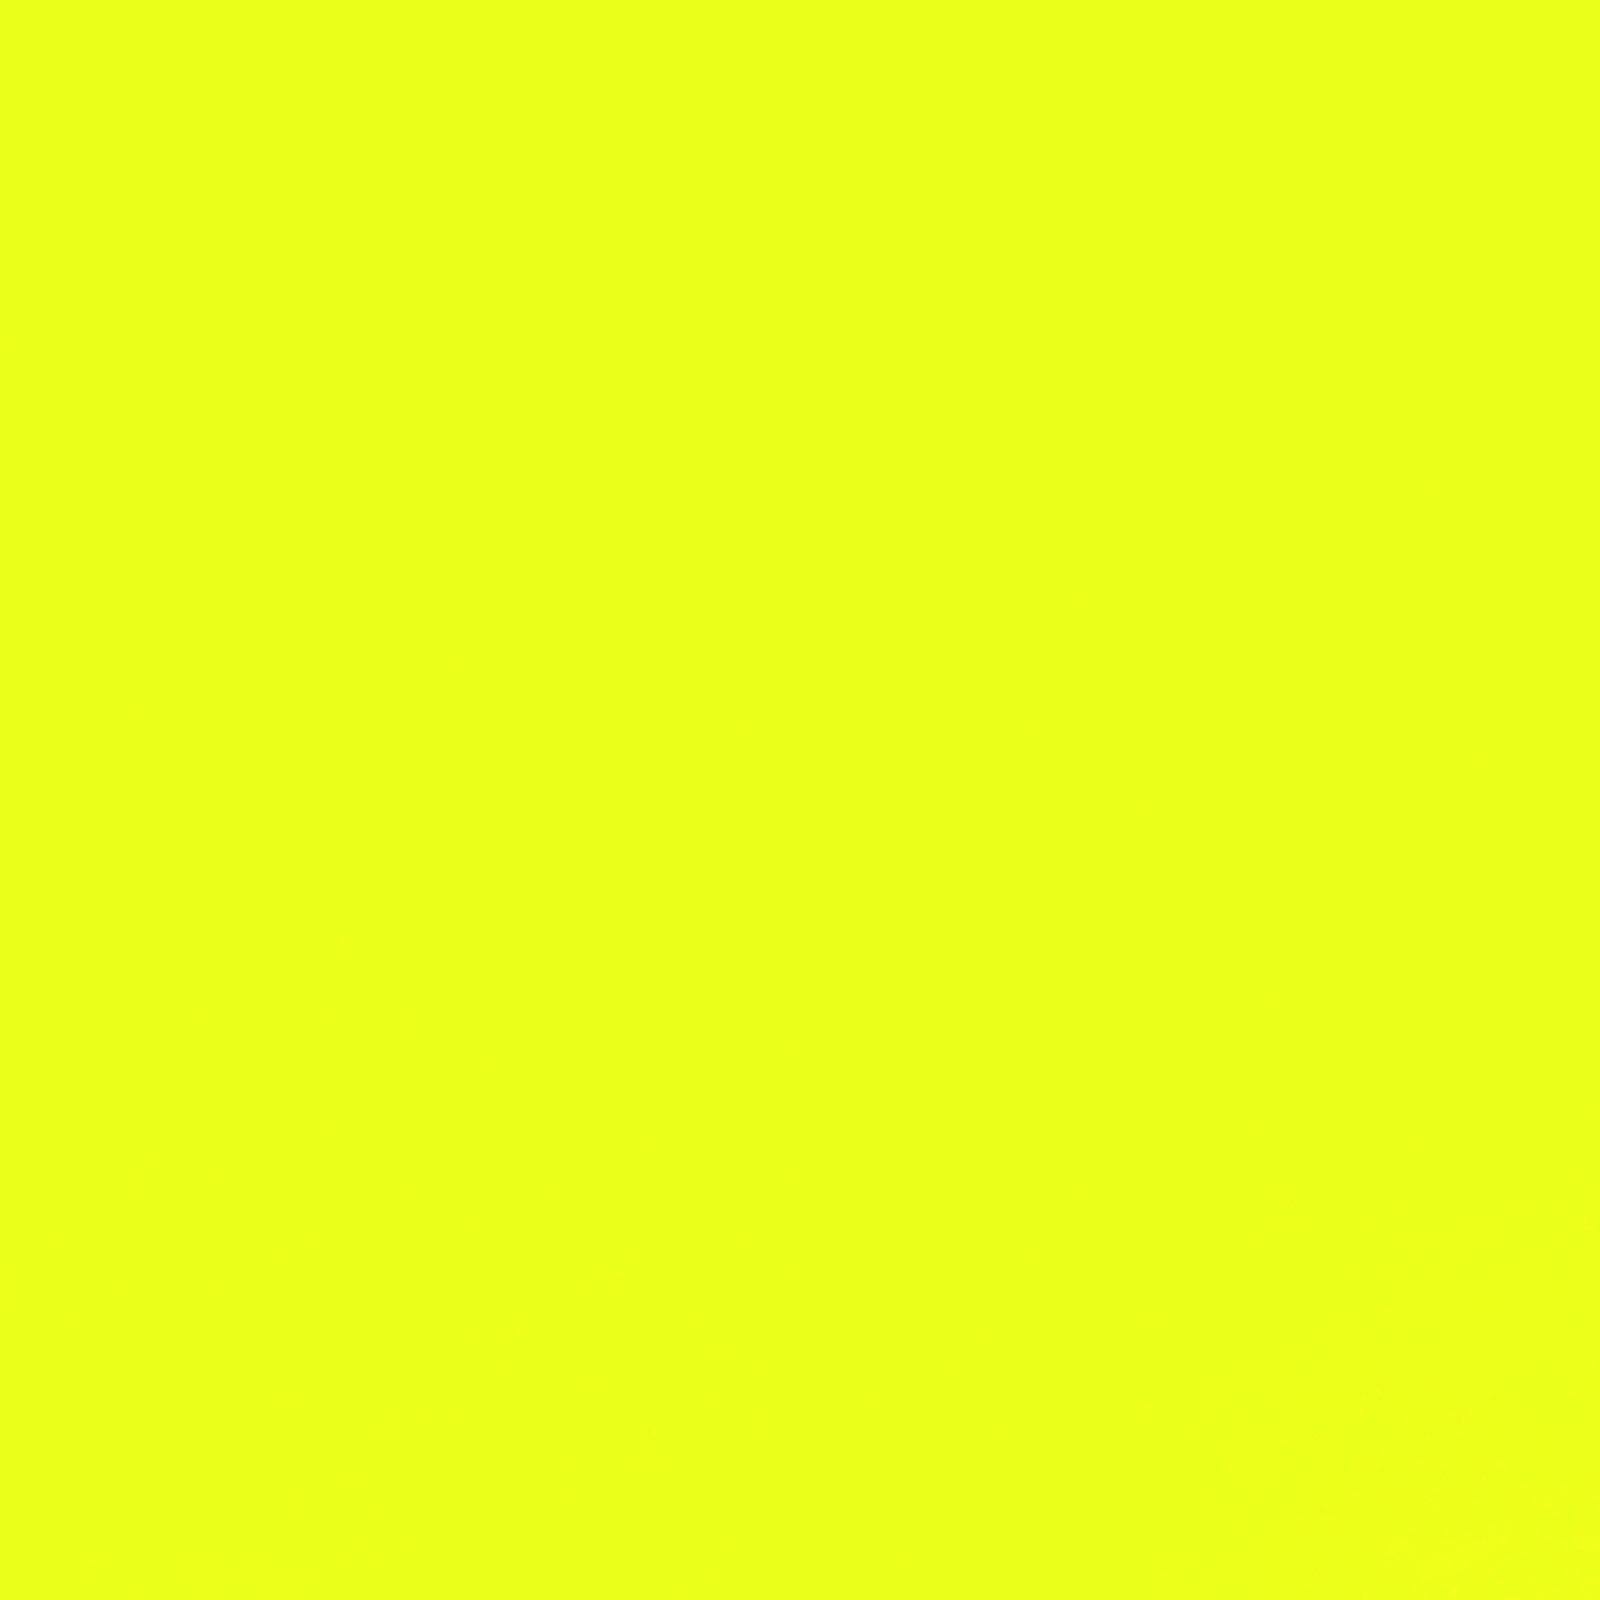 Polarfleece – Forro polar (colores fluorescente) - Amarillo neón